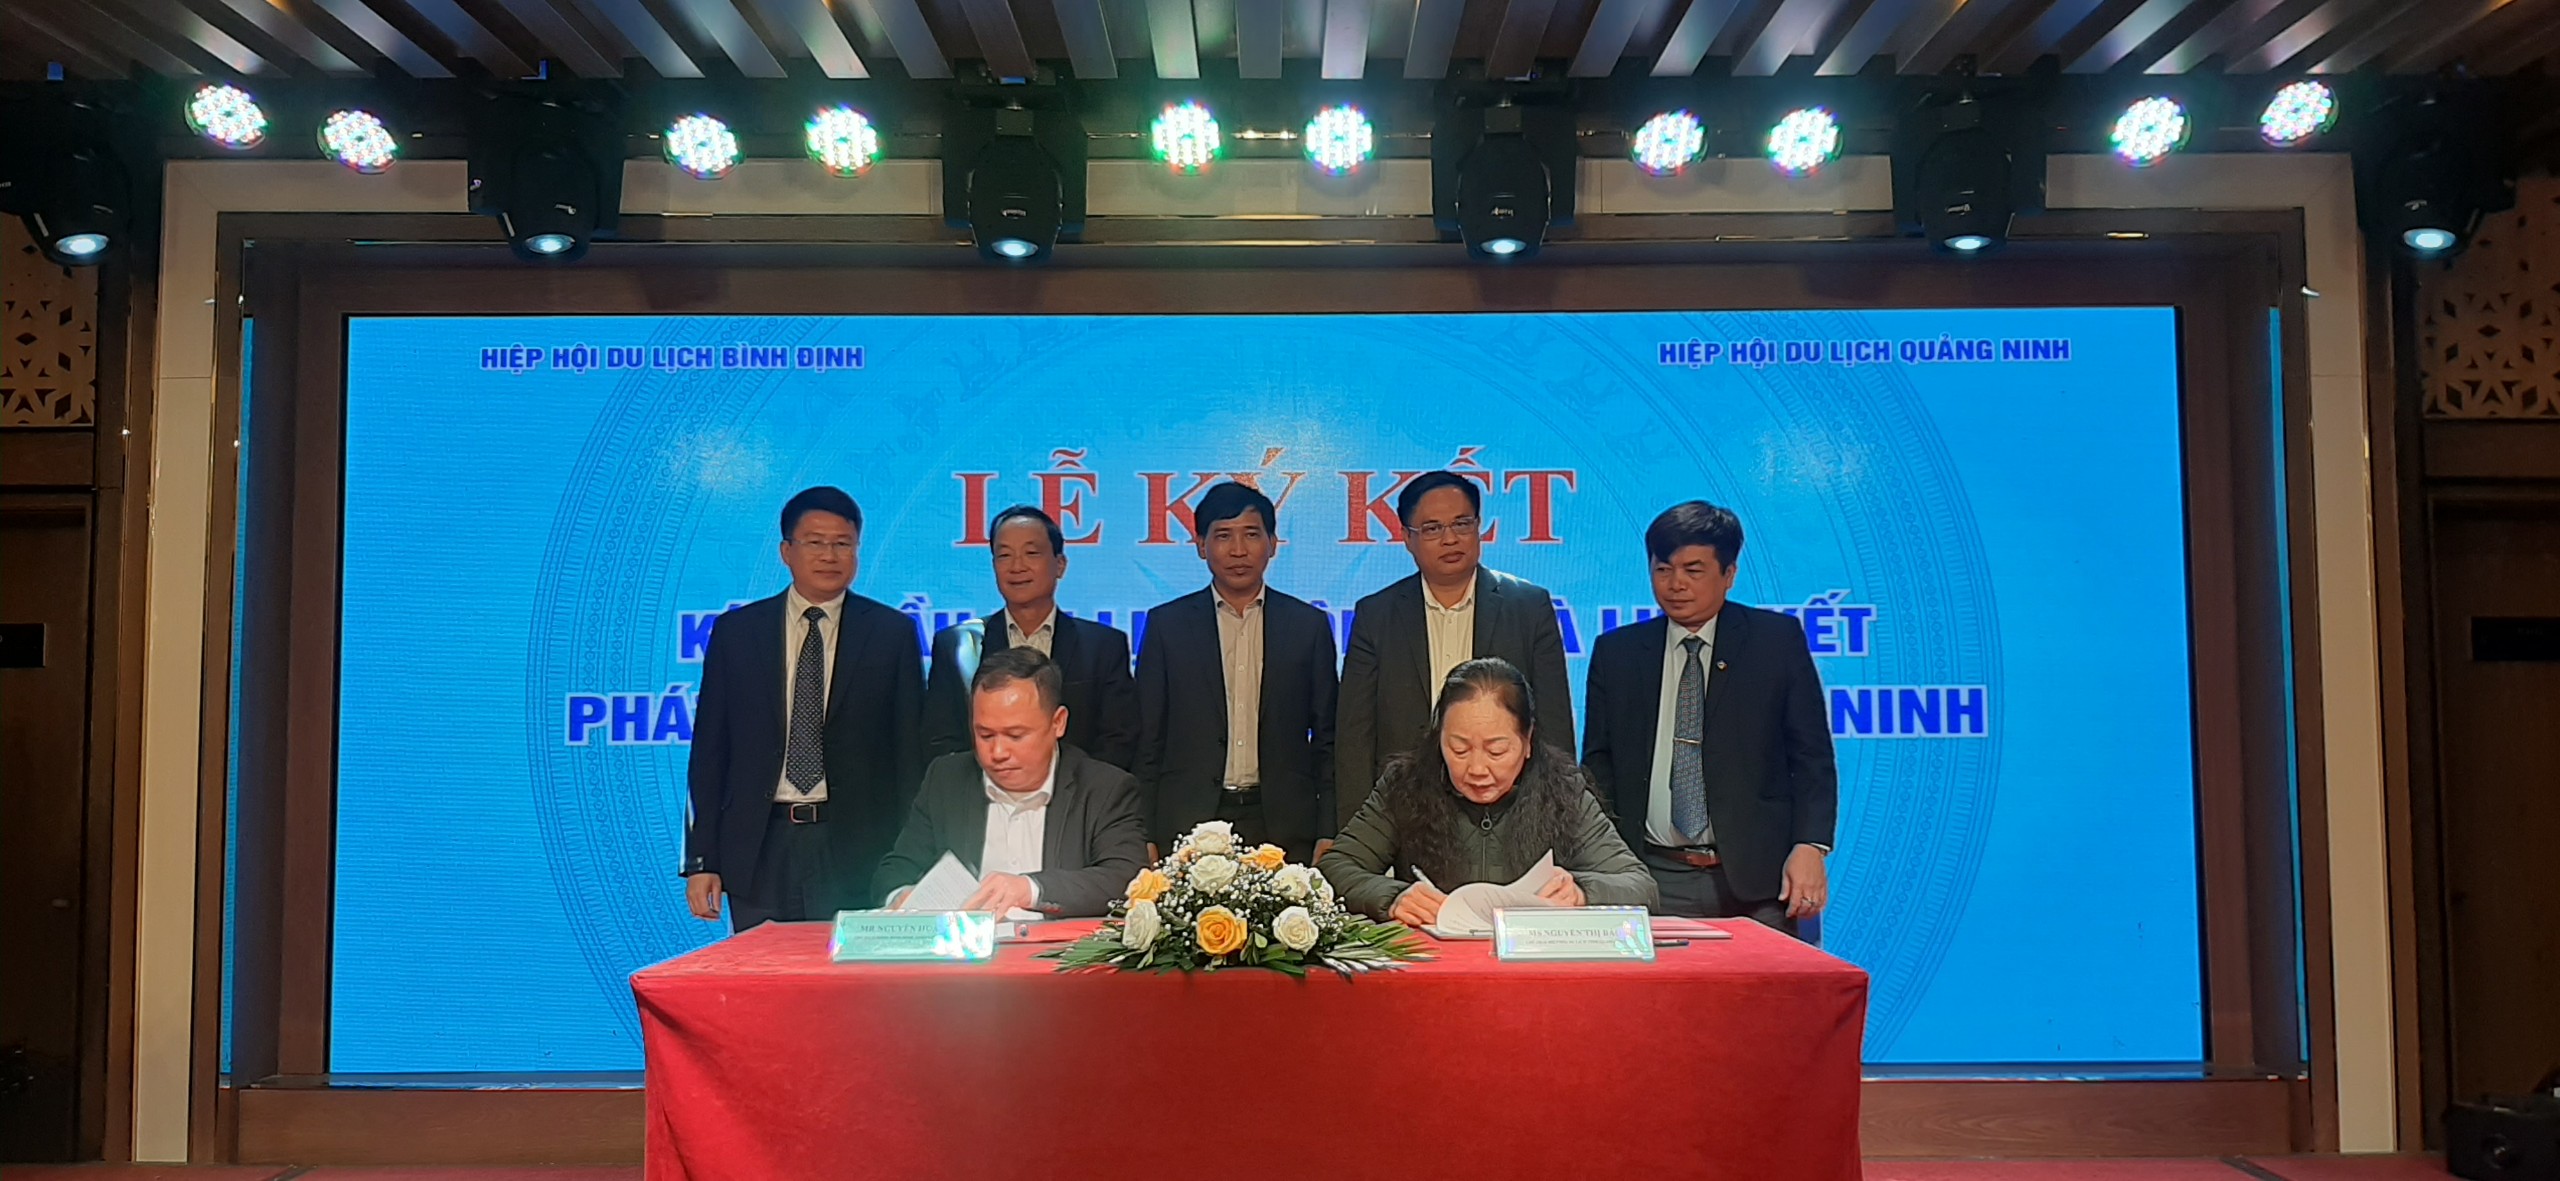 Hiệp hội Du lịch Quảng Ninh và Hiệp hội Du lịch Bình Định ký kết thỏa thuận hợp tác phát triển du lịch